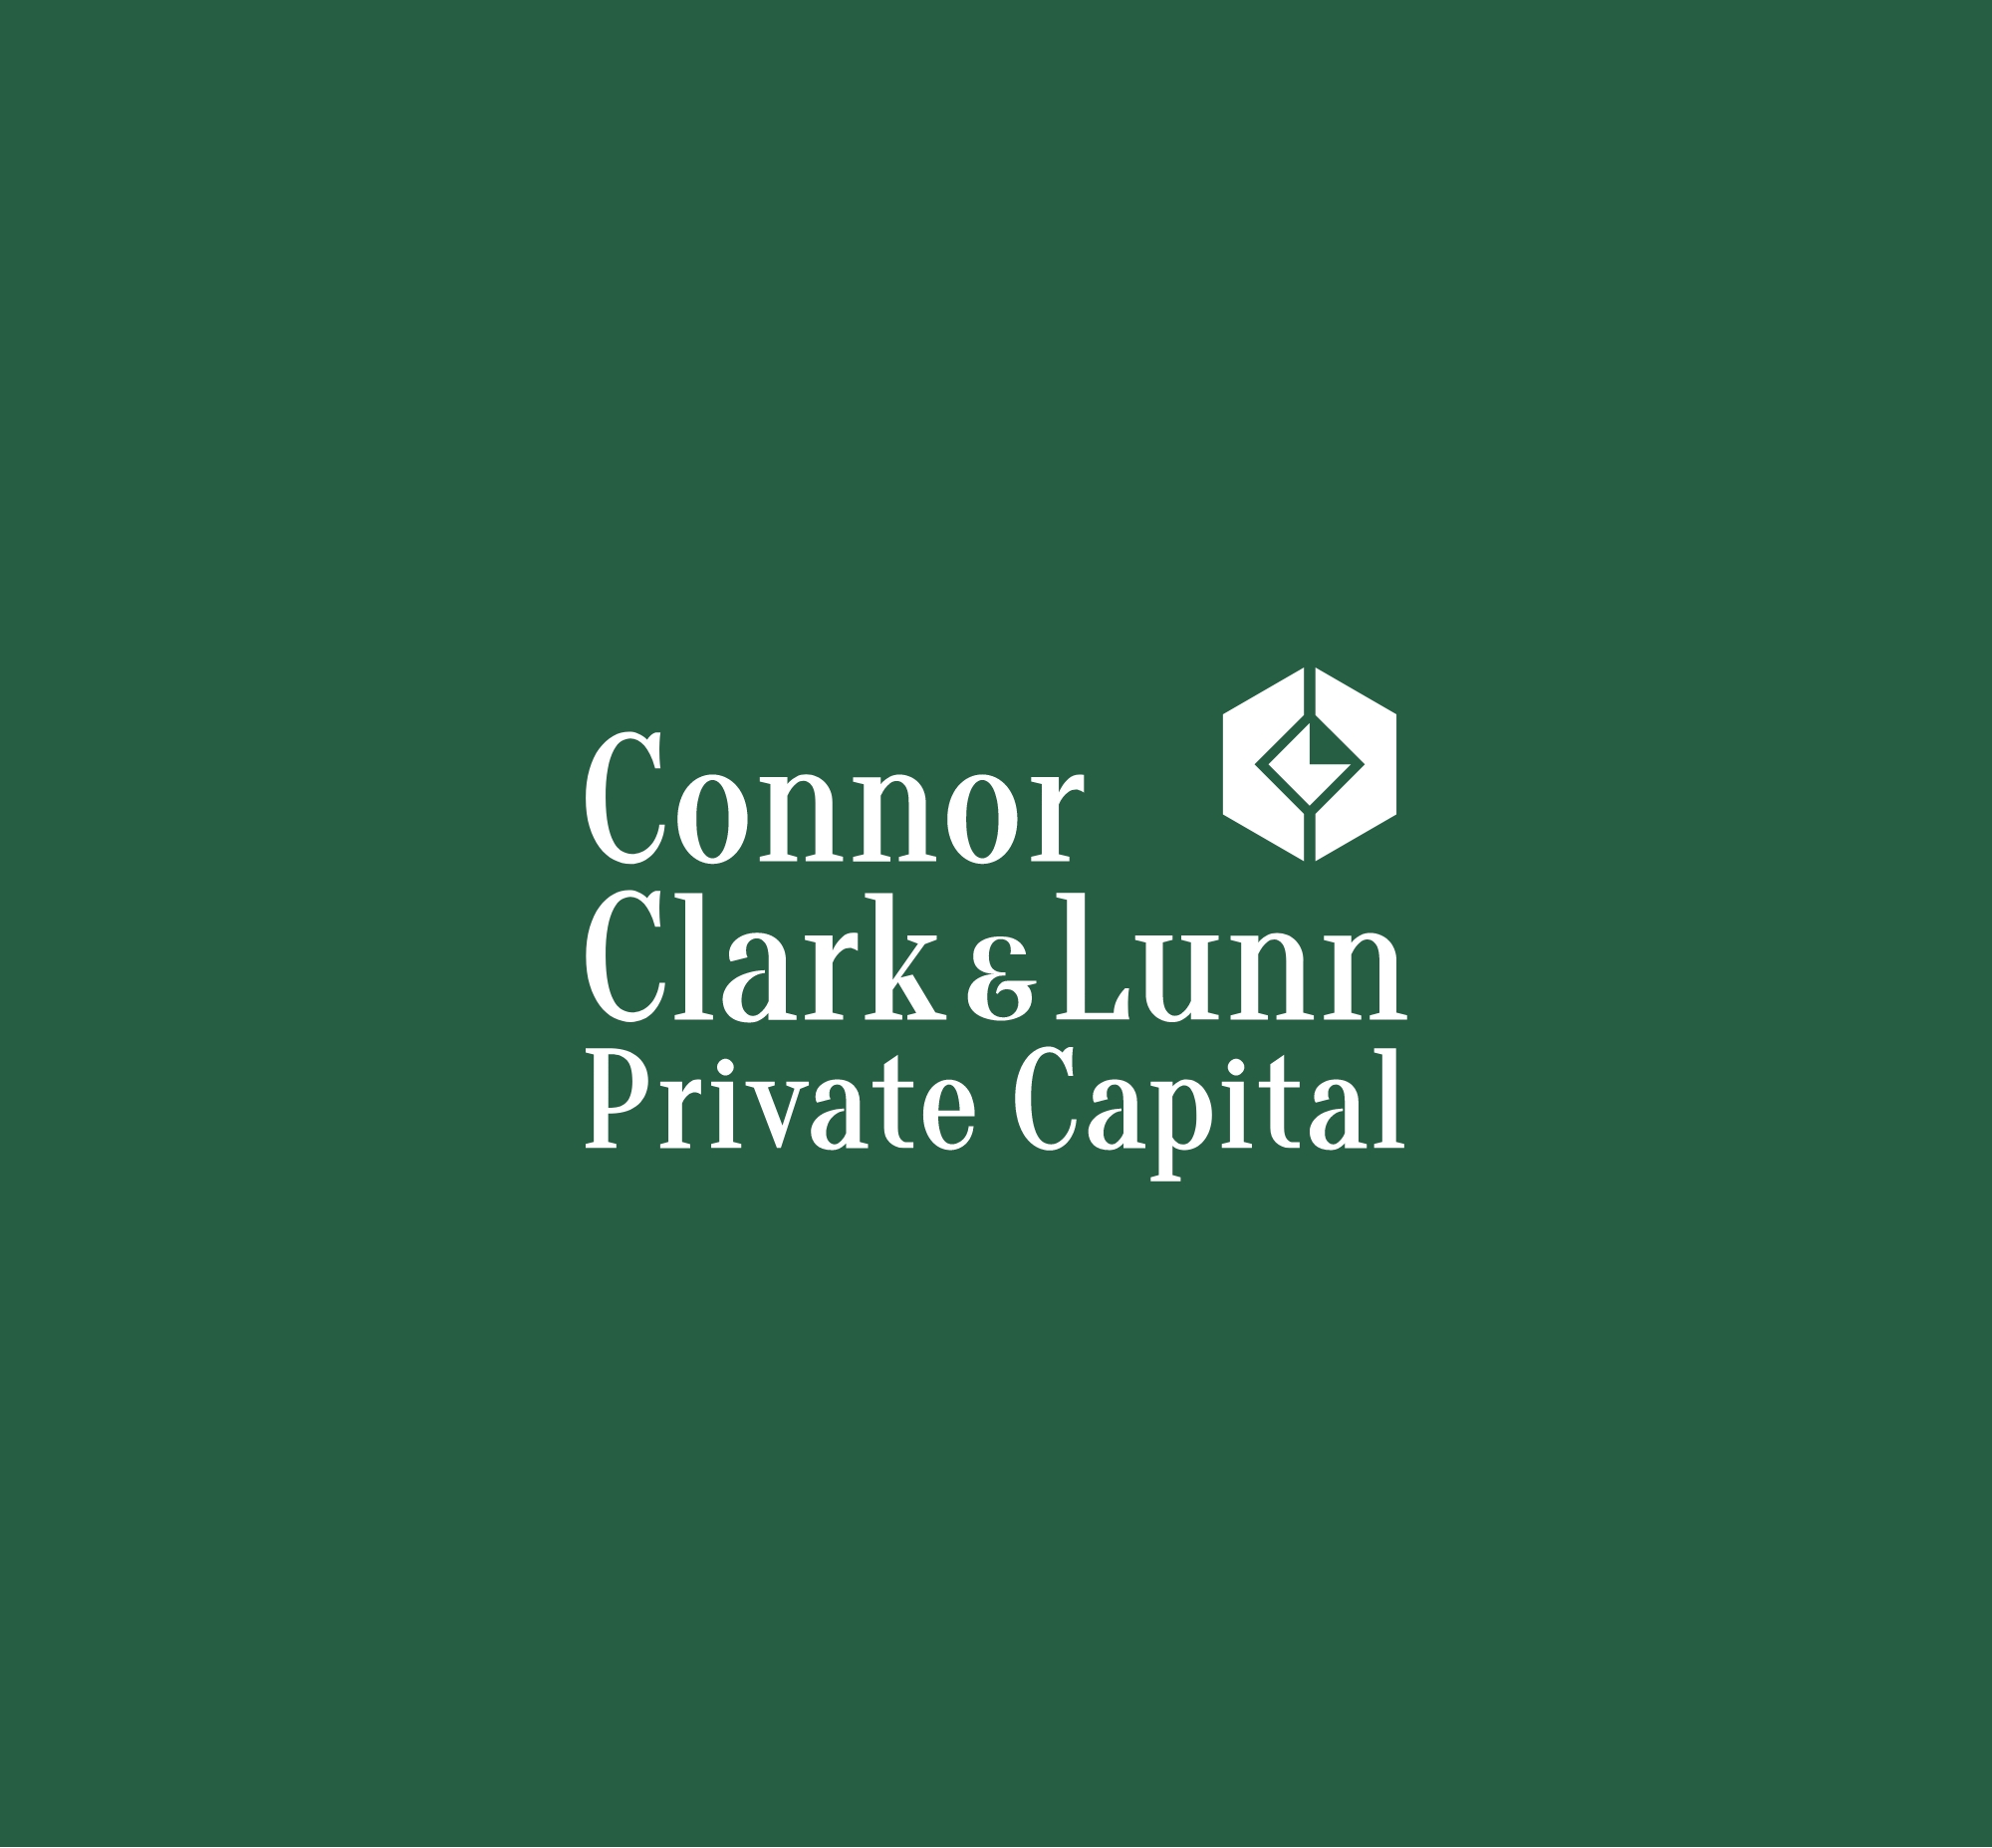 Connor Clark & Lunn Private Capital